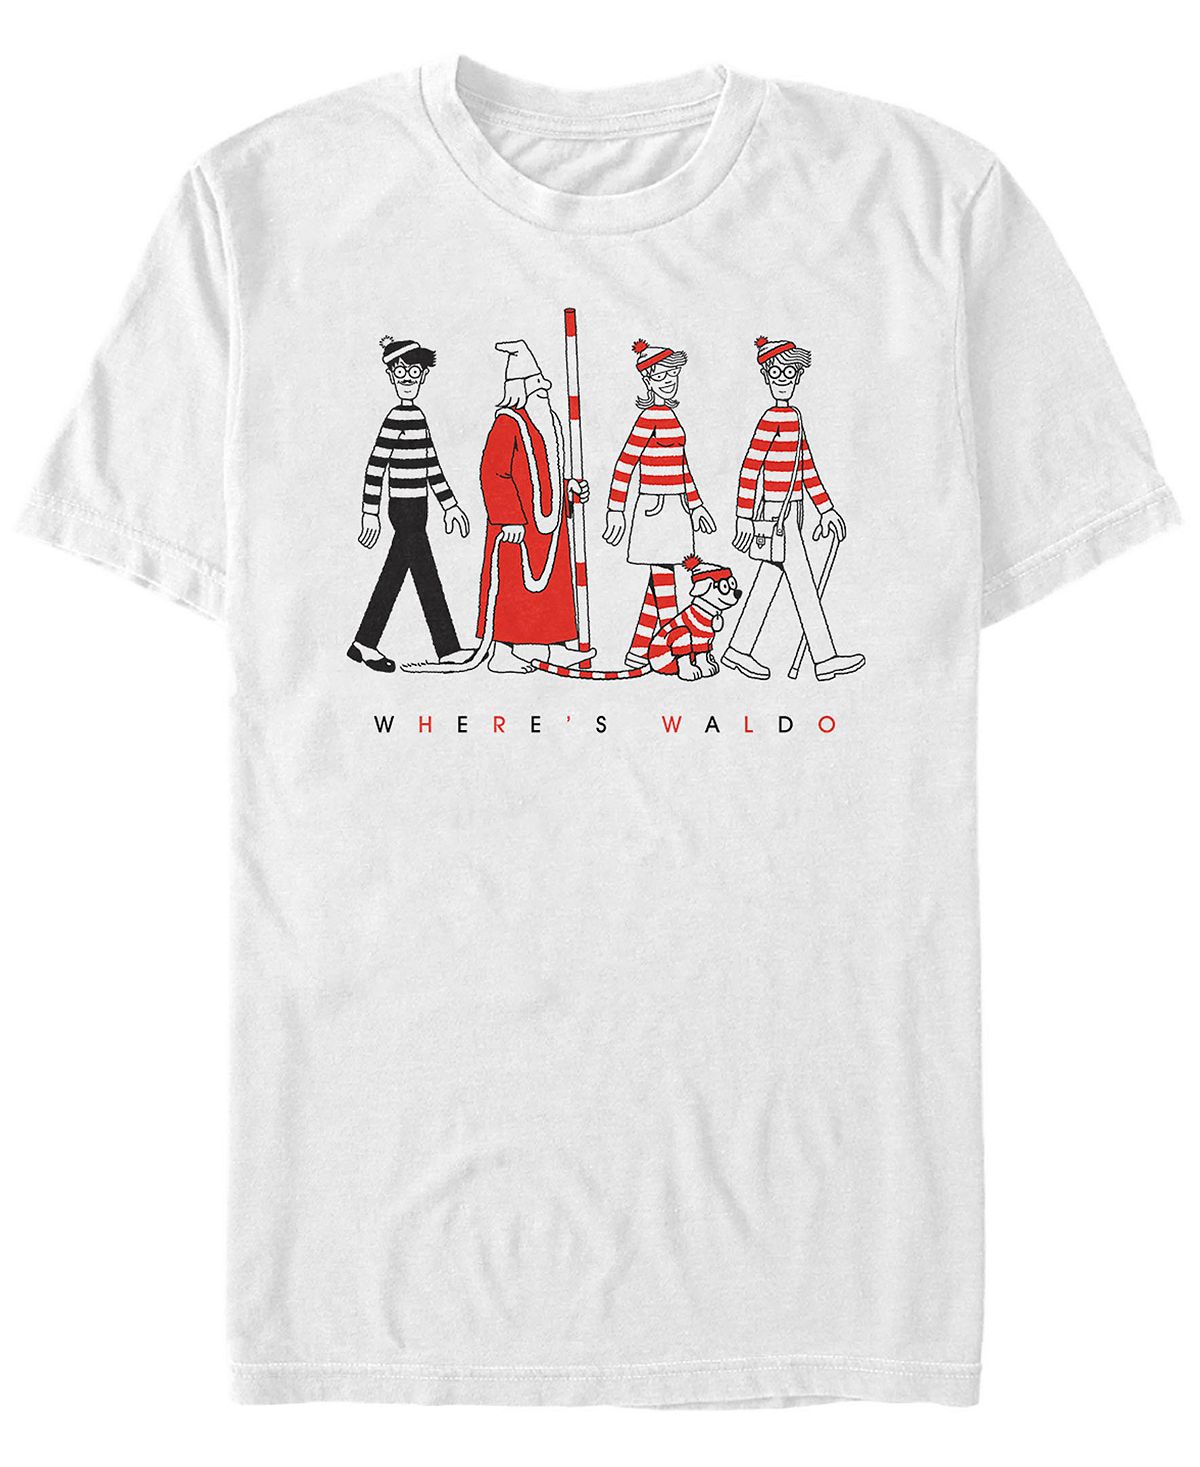 Мужская футболка с коротким рукавом where's waldo character line up Fifth Sun, белый